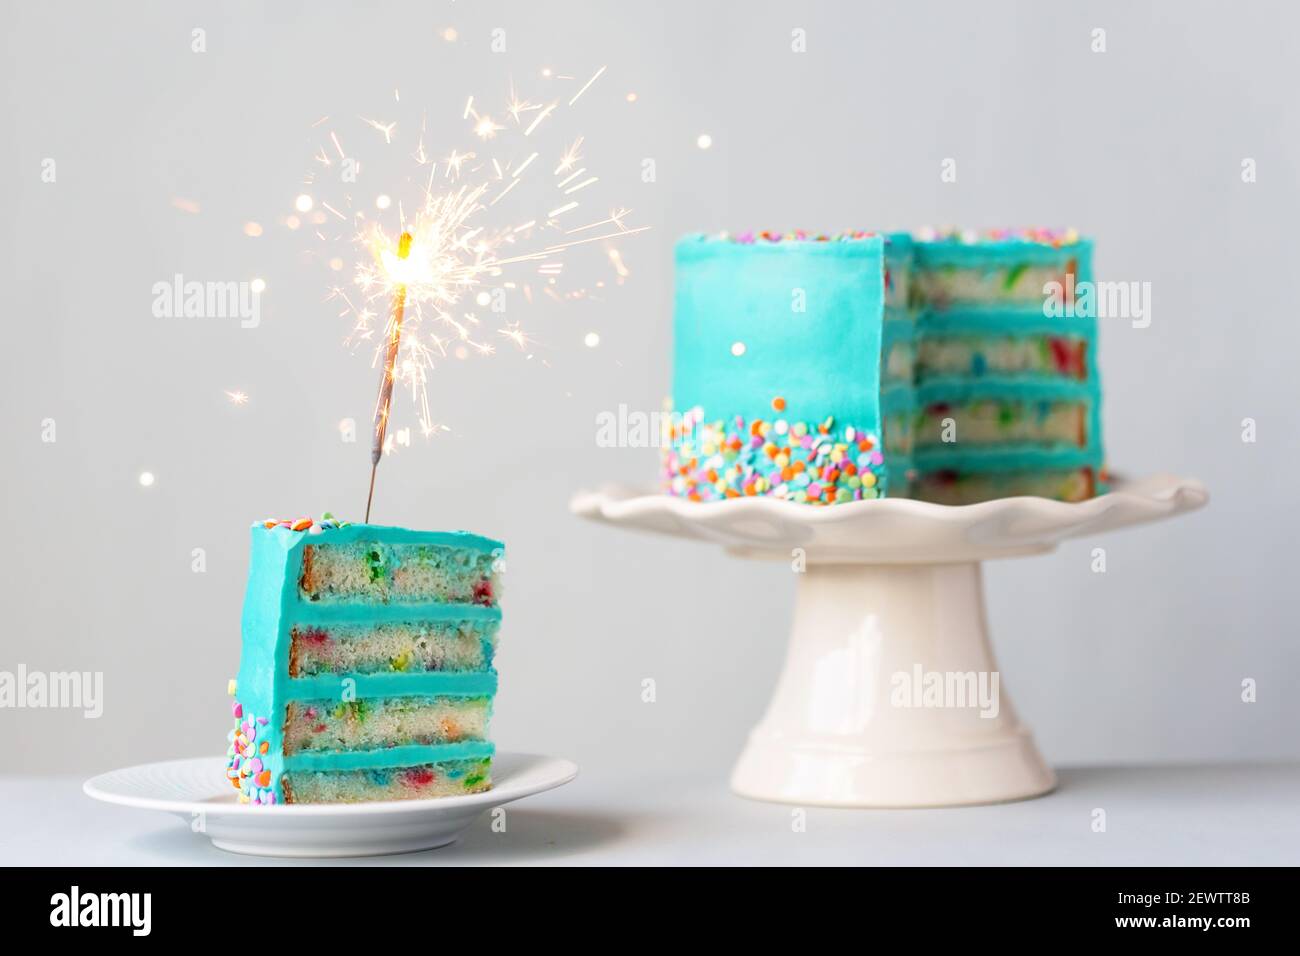 Un trozo de pastel de cumpleaños con un color turquesa y un sparkler Foto de stock